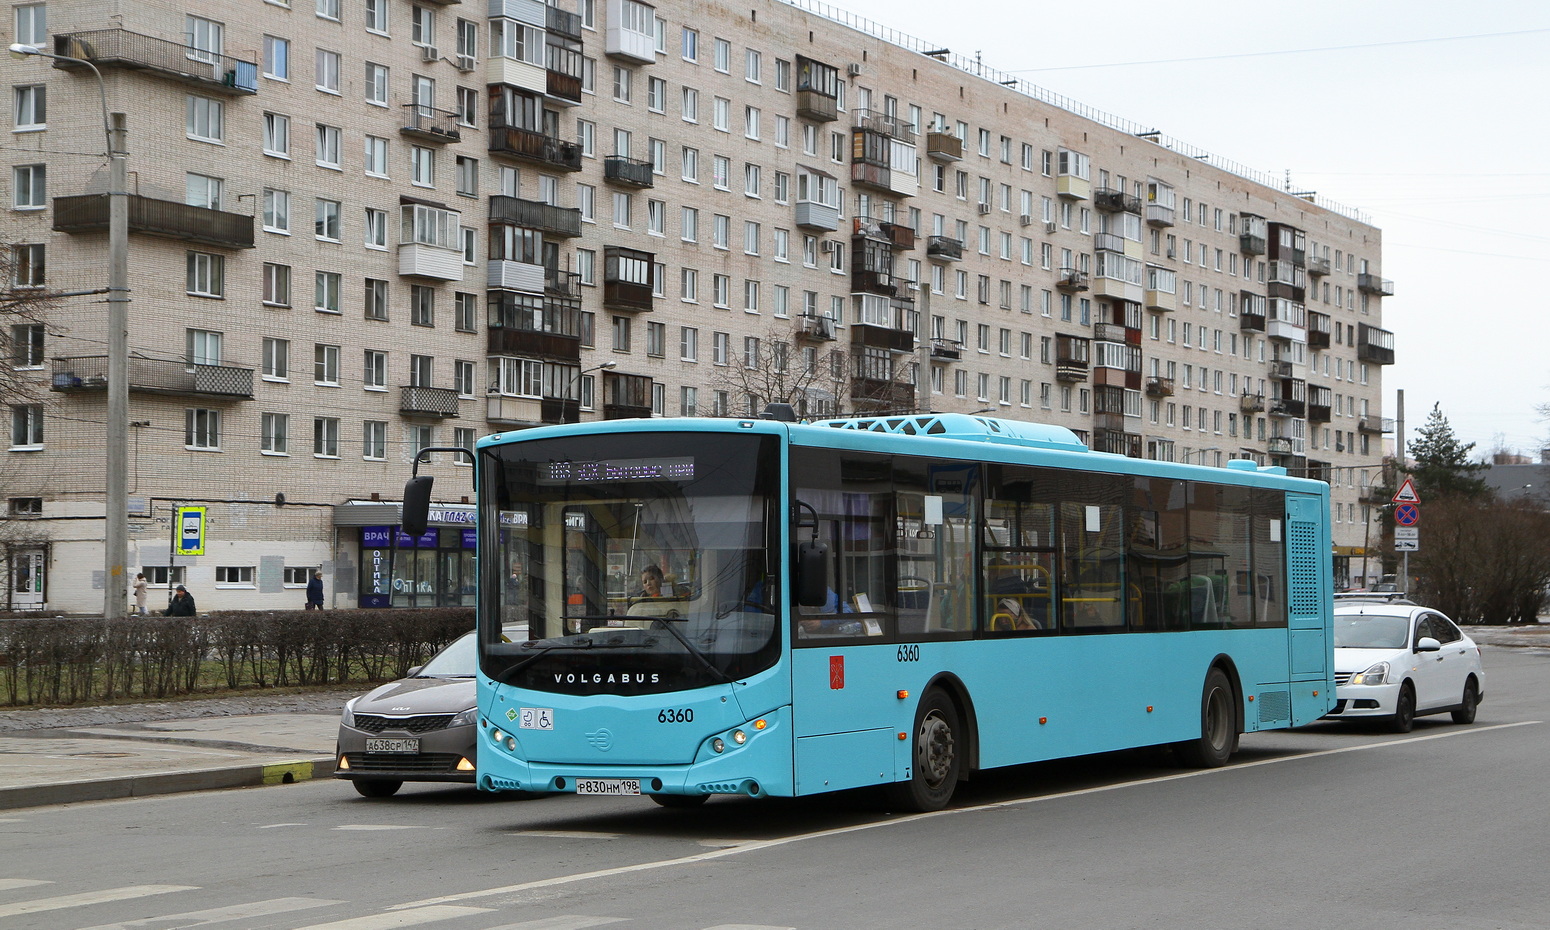 Sankt Peterburgas, Volgabus-5270.G2 (LNG) Nr. 6360